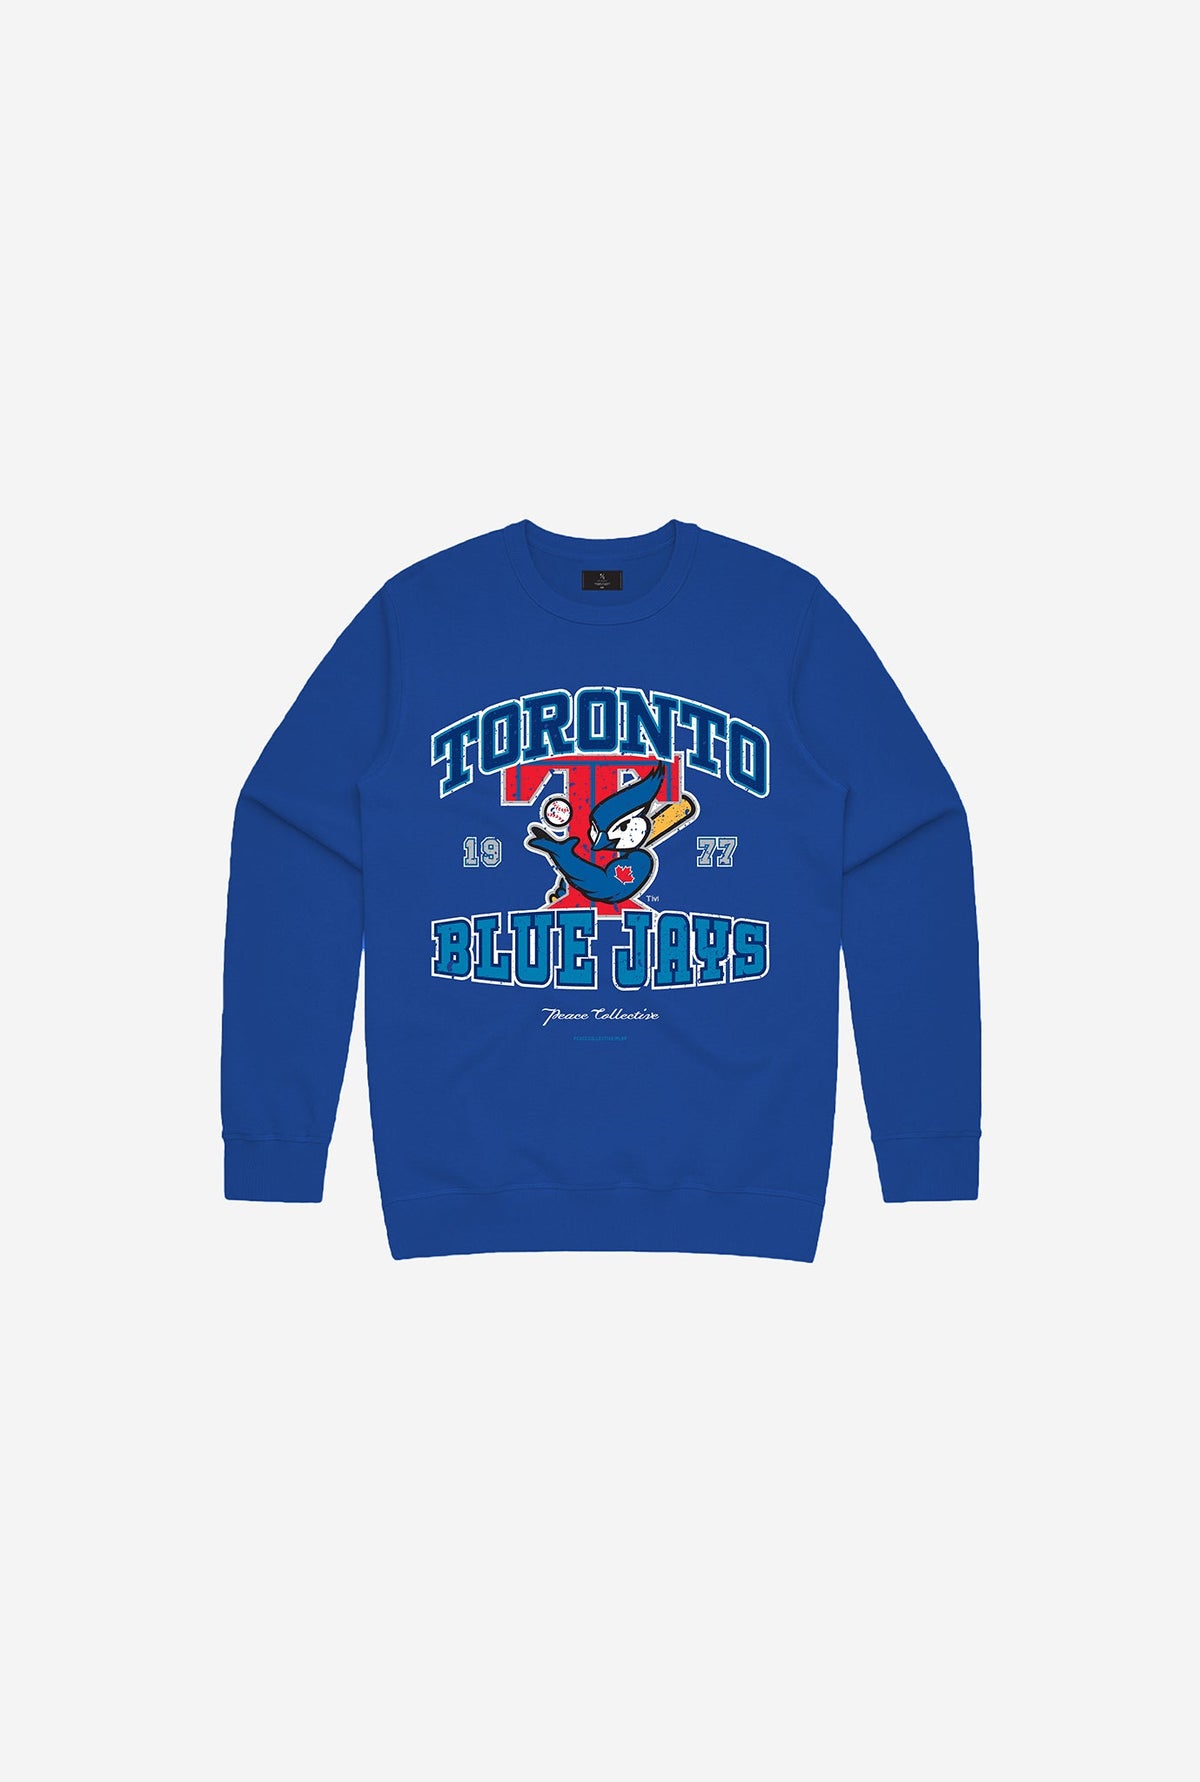 Toronto Blue Jays Vintage Washed Kids Crewneck - Royal